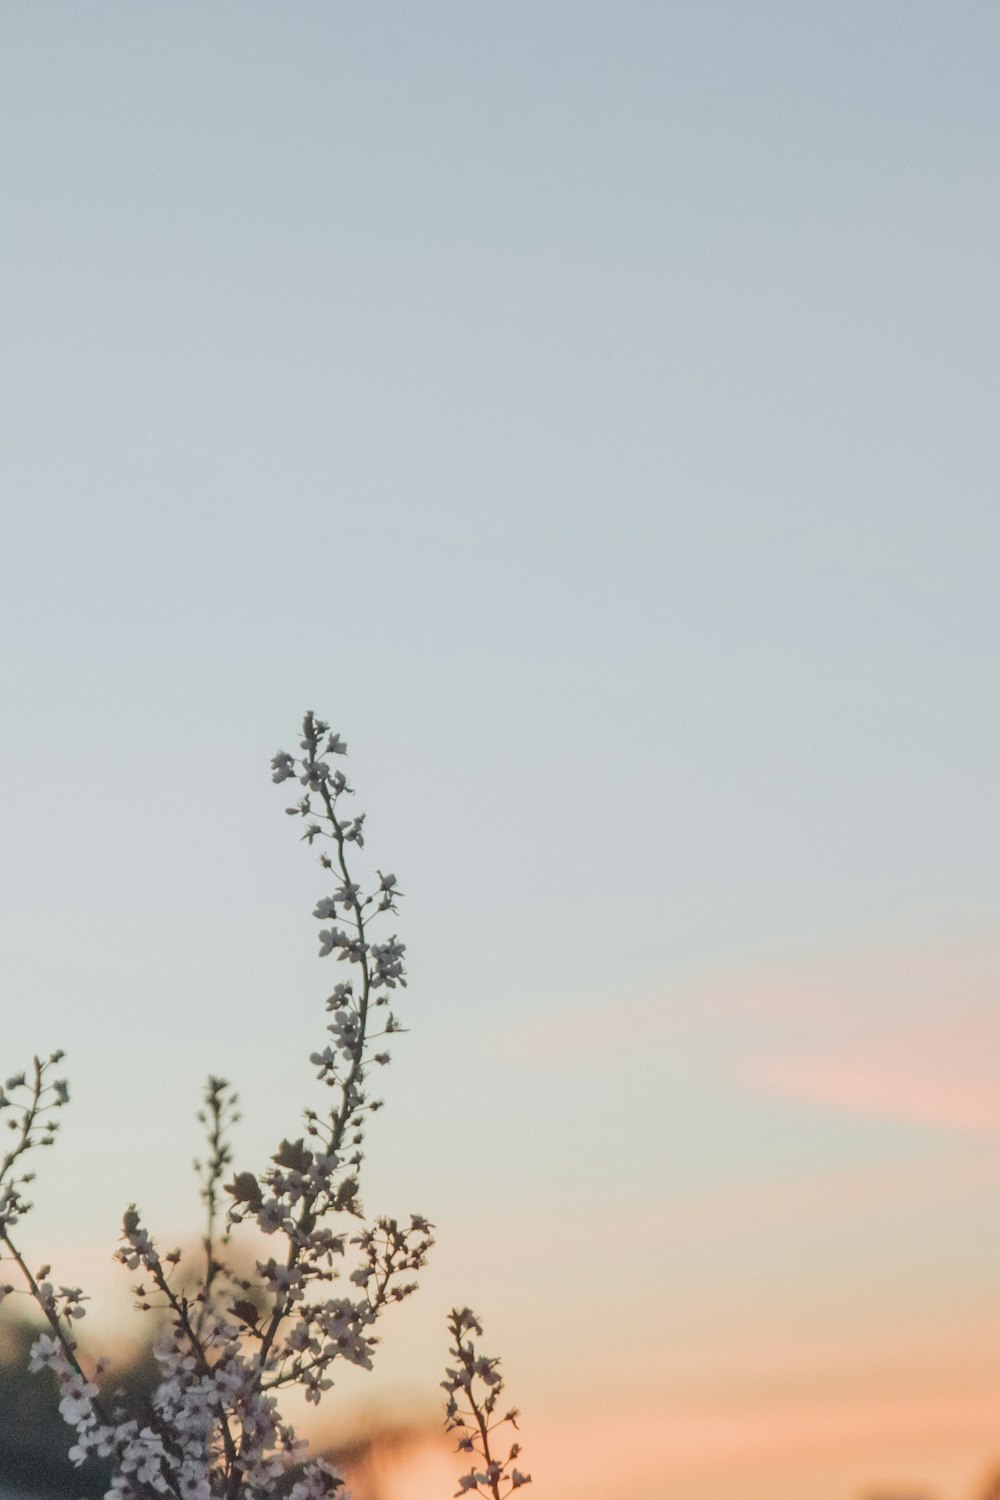 albero di ciliegio bianco in fiore sotto il cielo blu all'ora d'oro